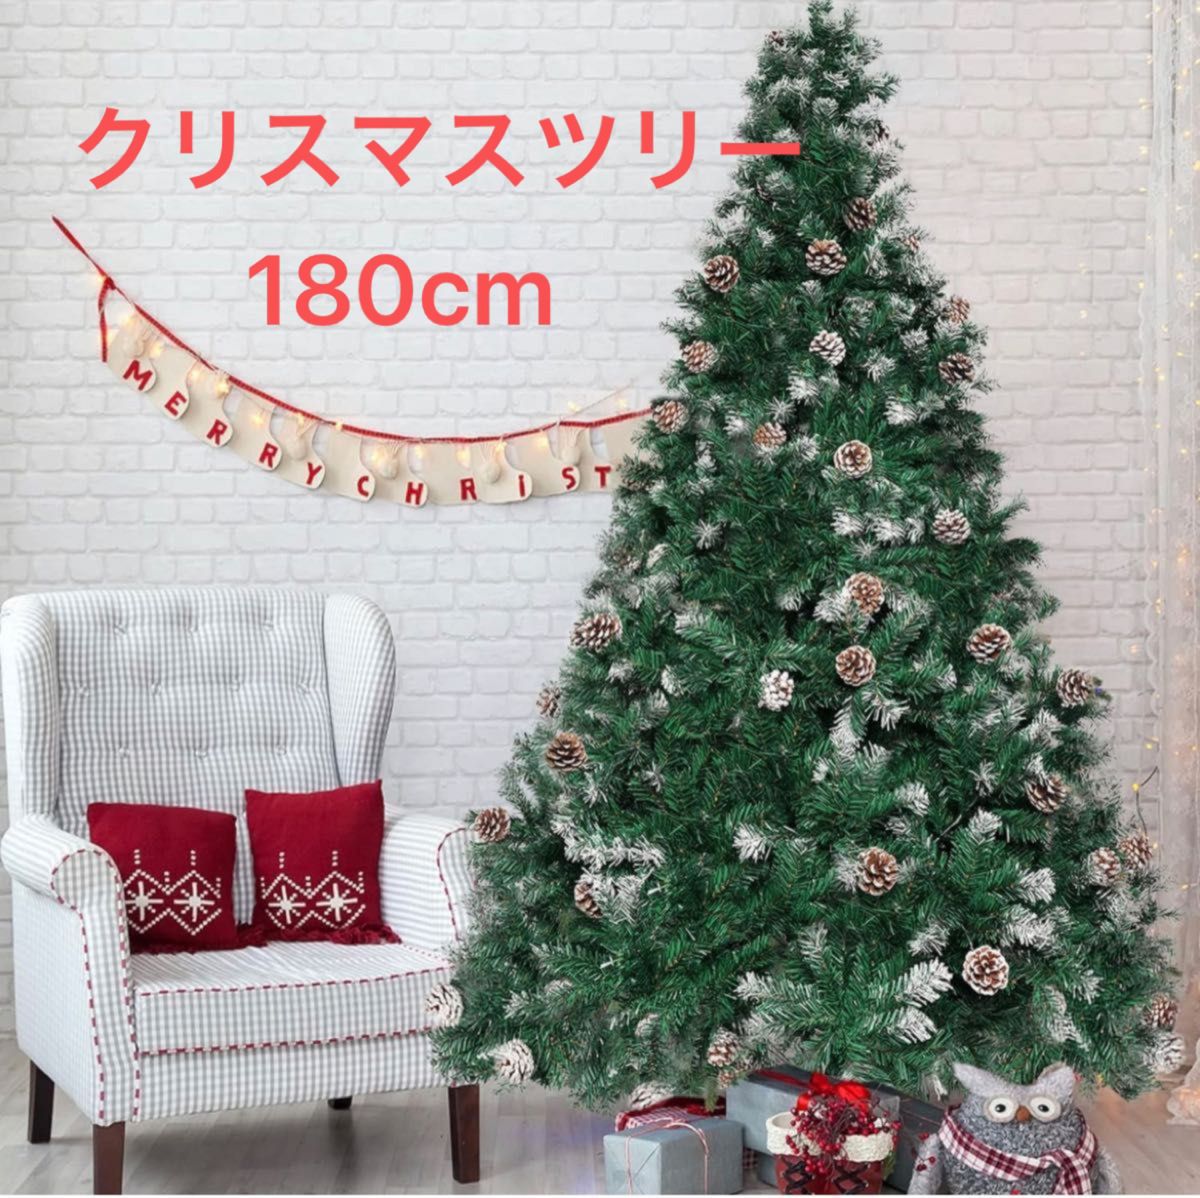 クリスマスツリー 180cm クリスマス 装飾 屋内 屋外 インテリア 北欧 組立簡単 収納便利 日本語説明書付き